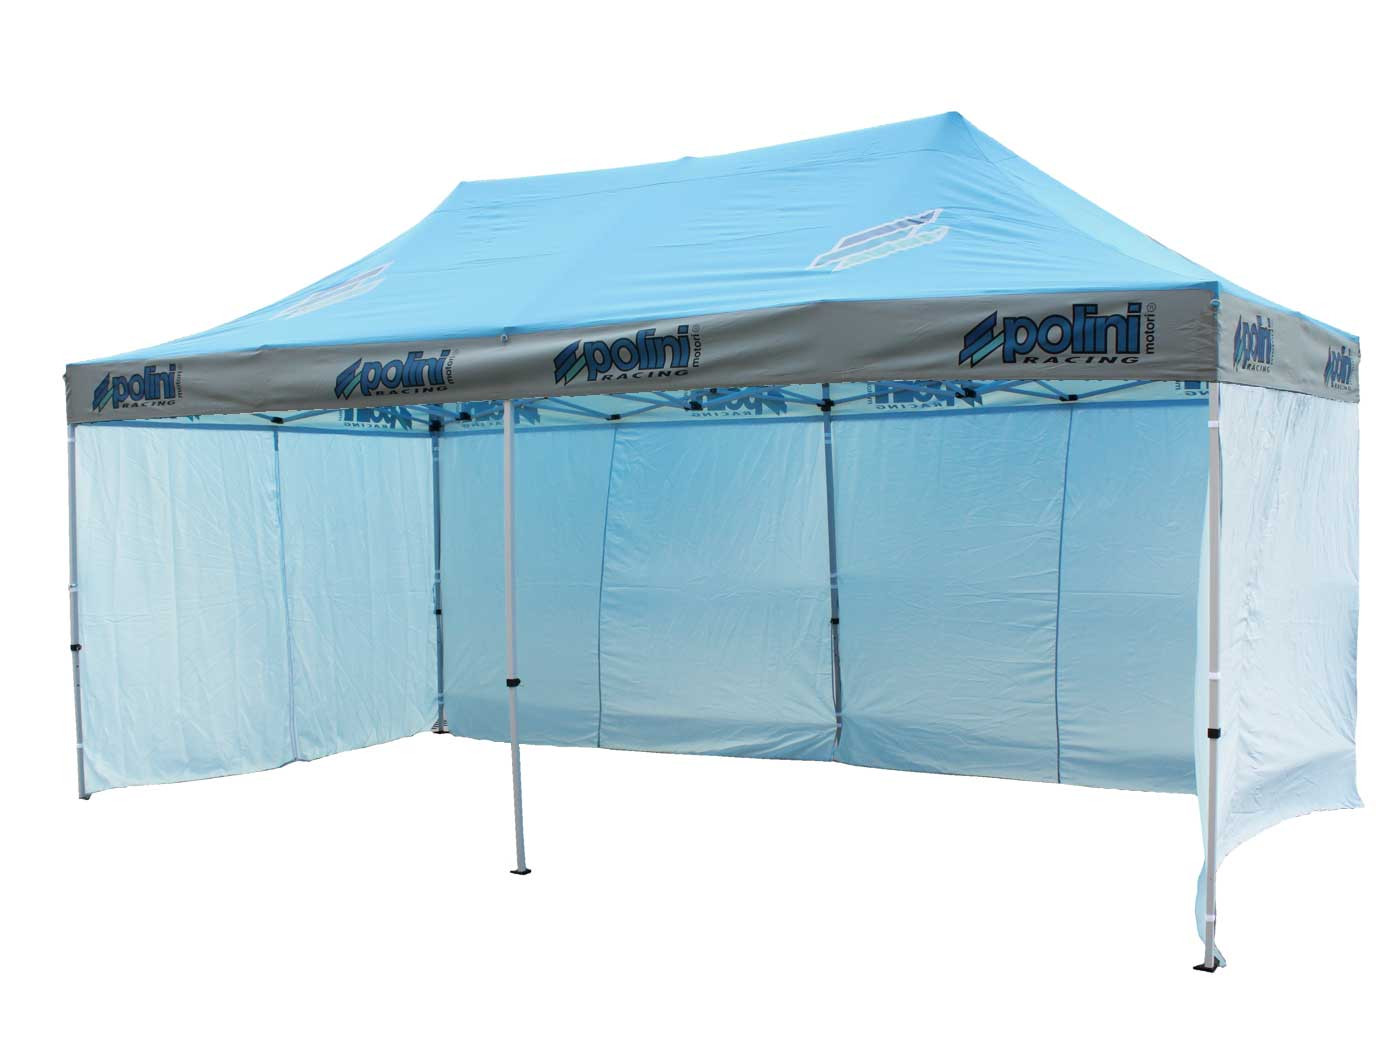 Polini Racing 6x3m-es kiállító sátor